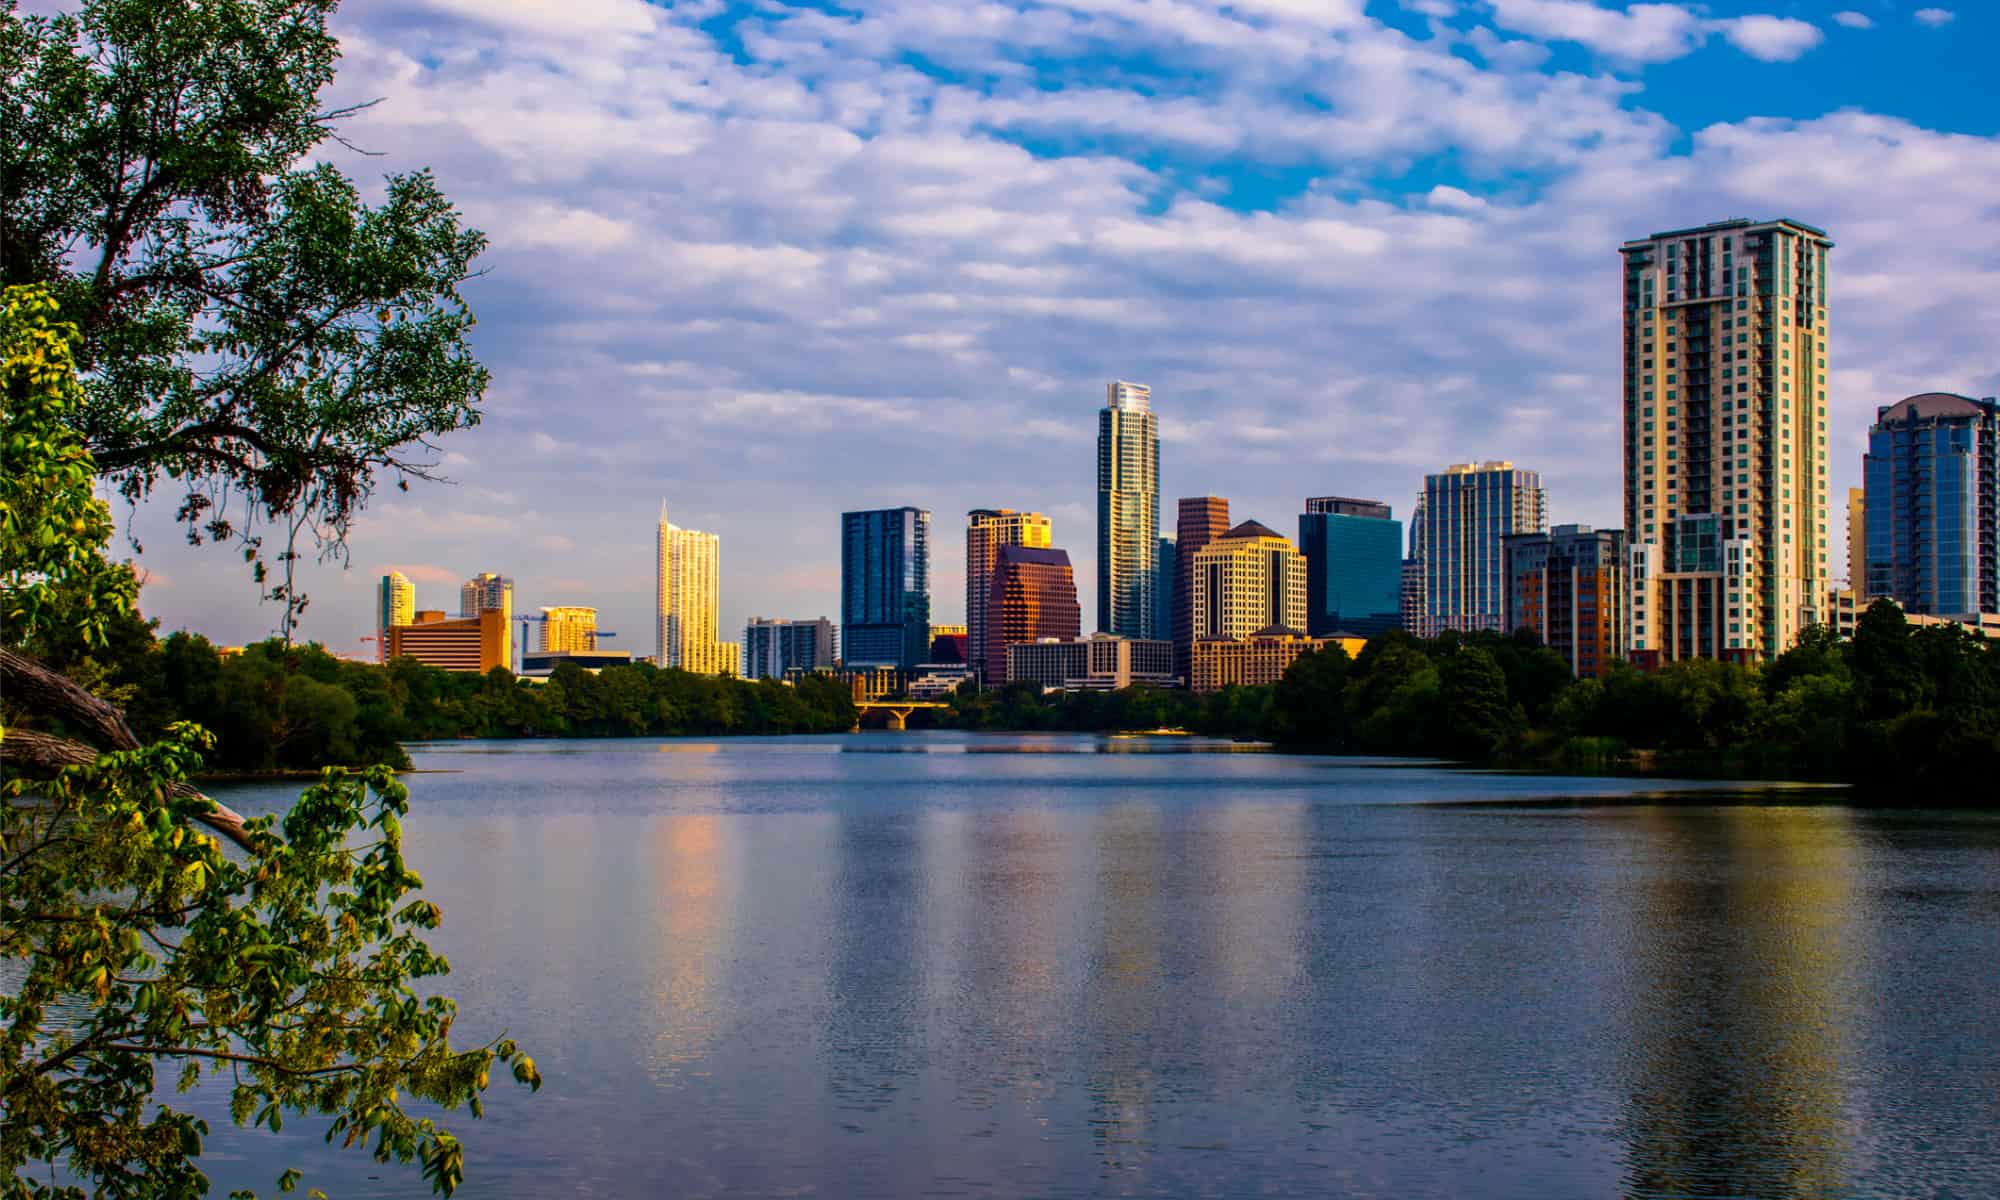 Austin, Texas skyline